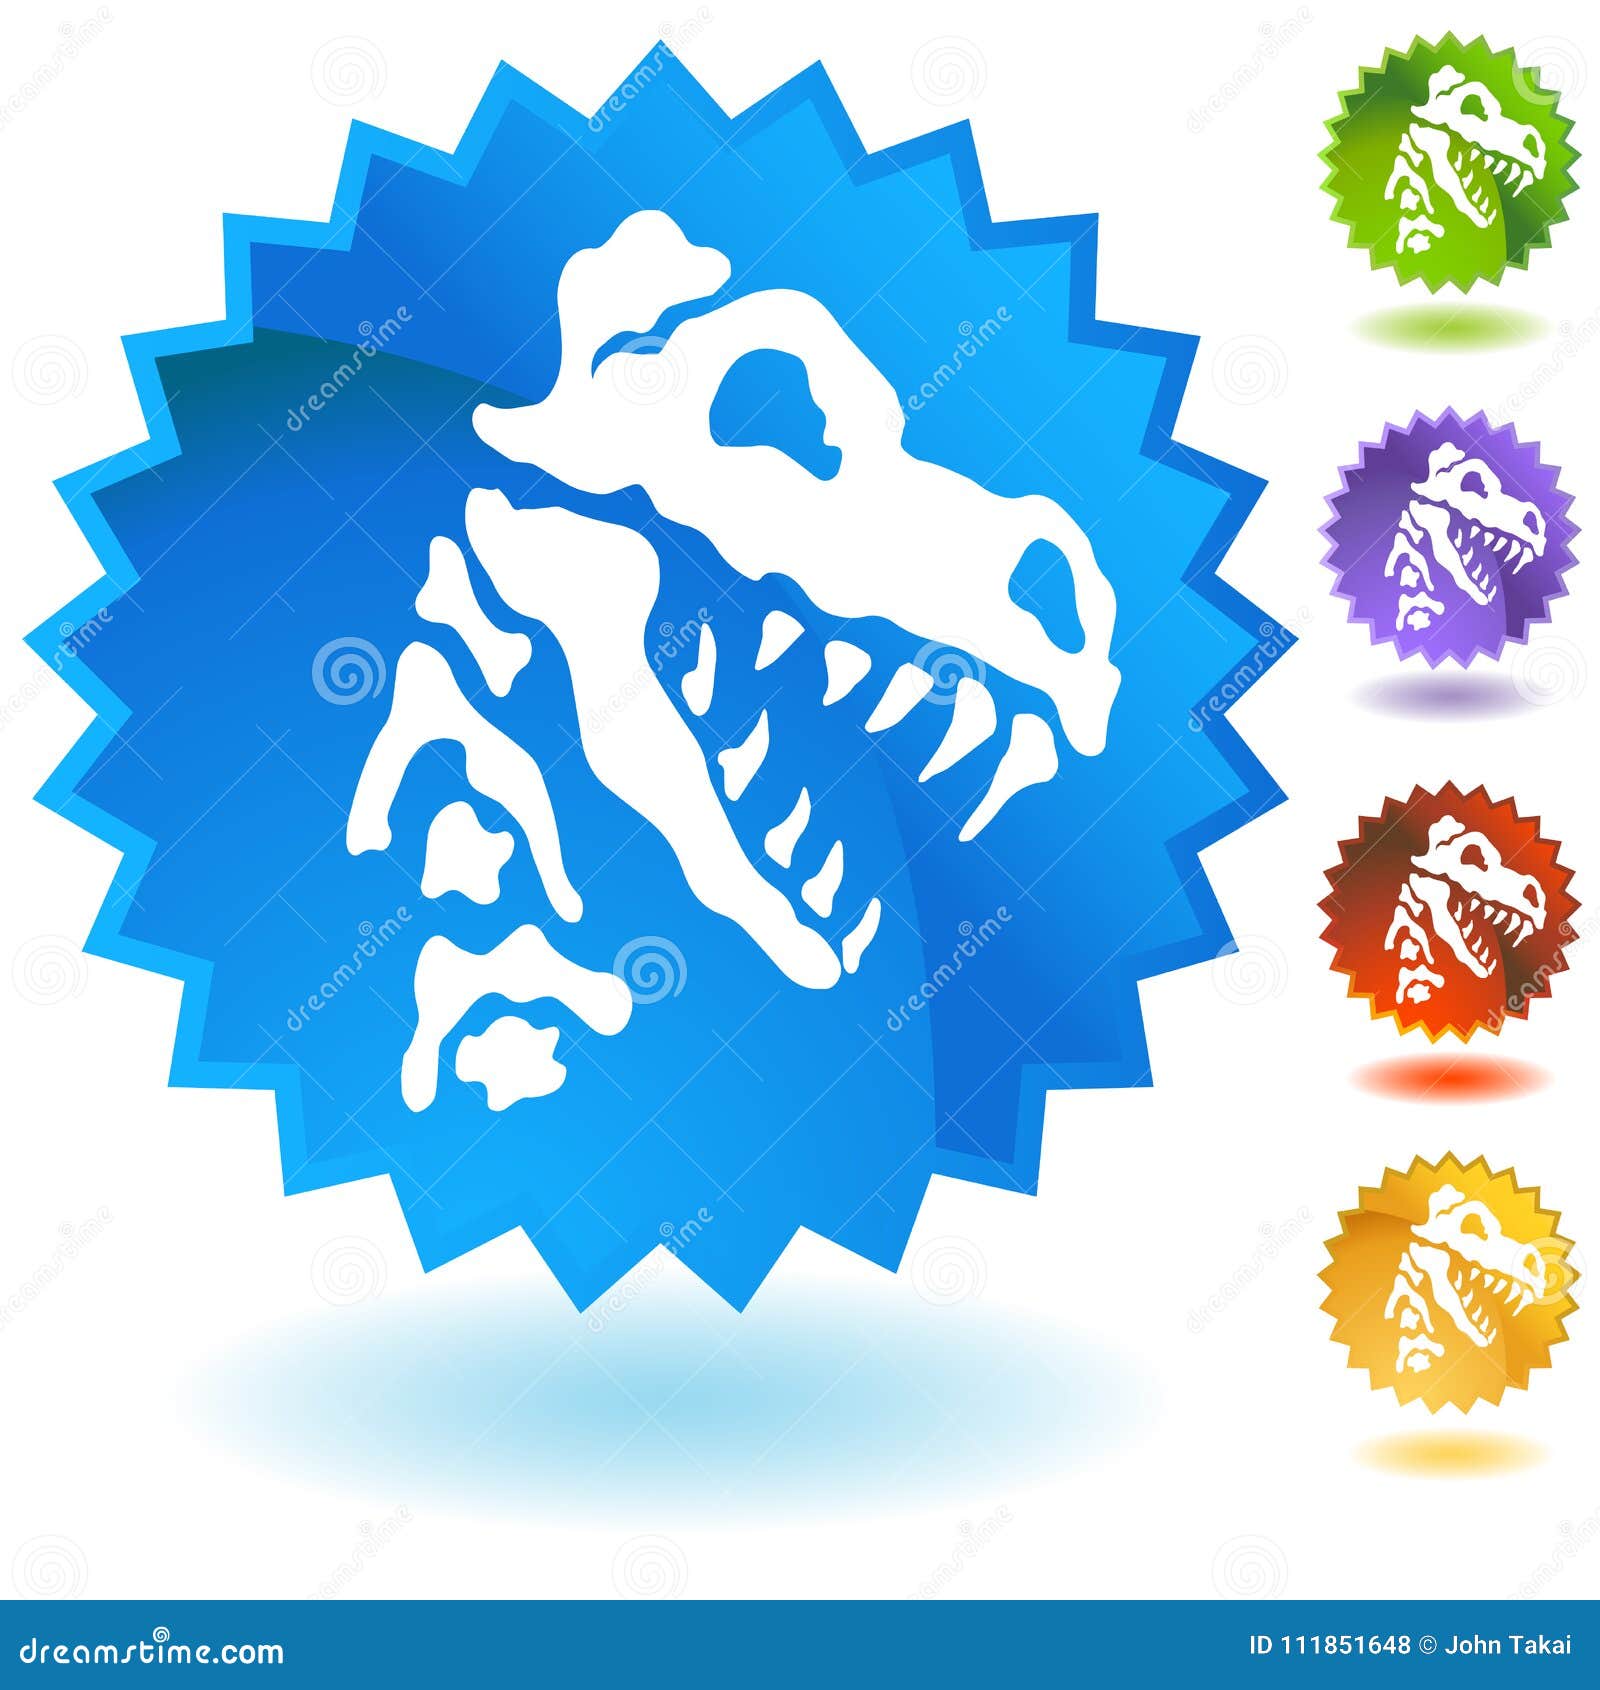 Dinossauro Roxo Com Ilustração De Cauda De Espinhos Royalty Free SVG,  Cliparts, Vetores, e Ilustrações Stock. Image 45533235